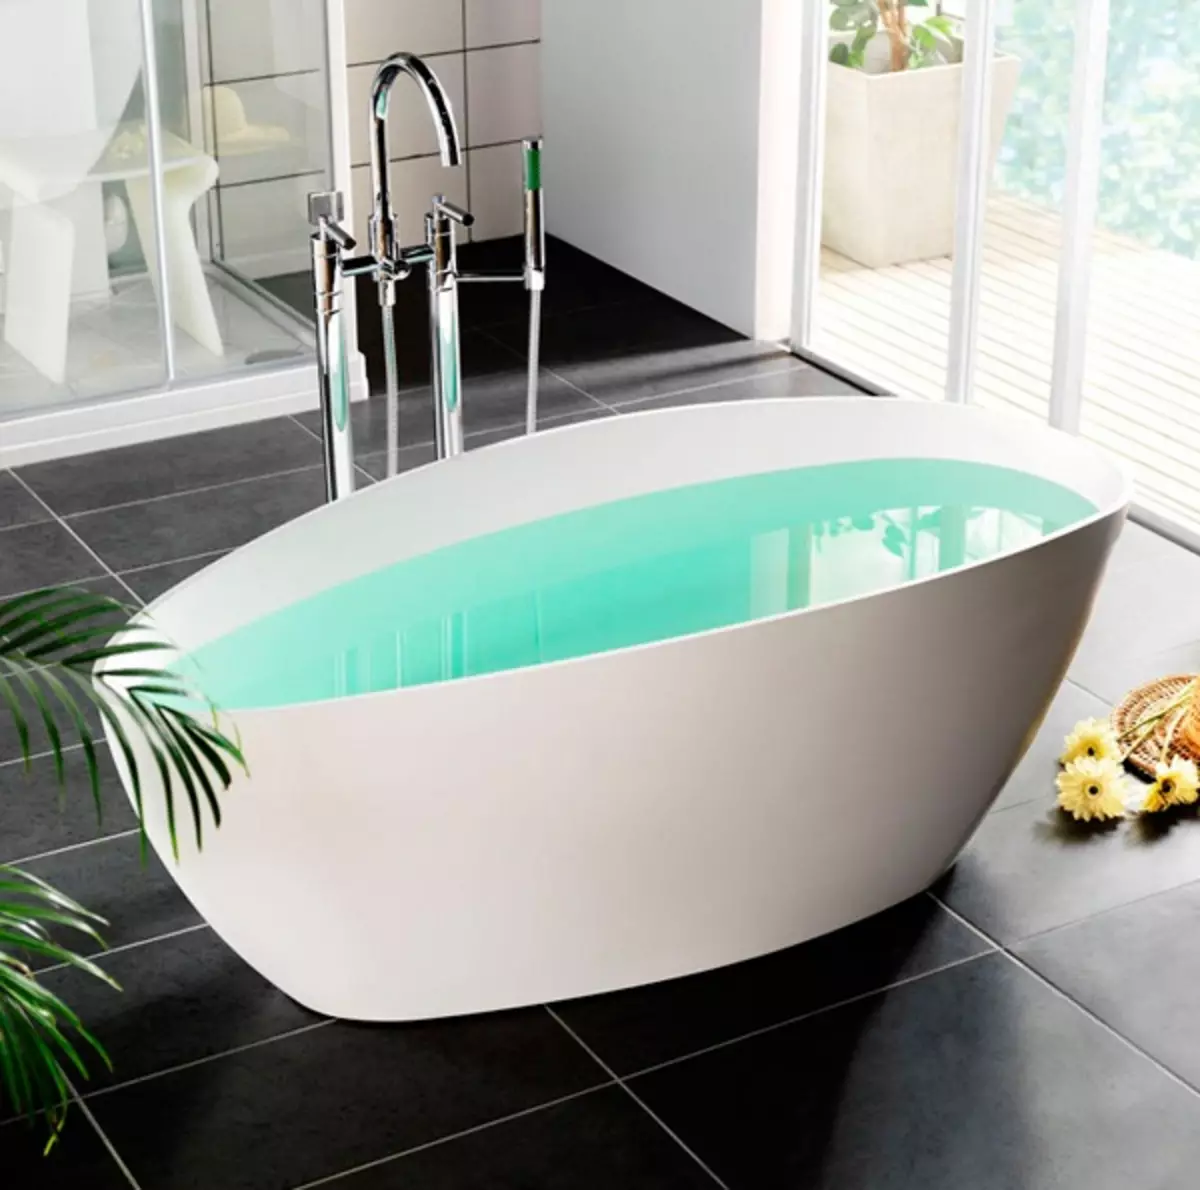 Top 8 melhores fabricantes de banhos acrílicos - Visão geral do mercado